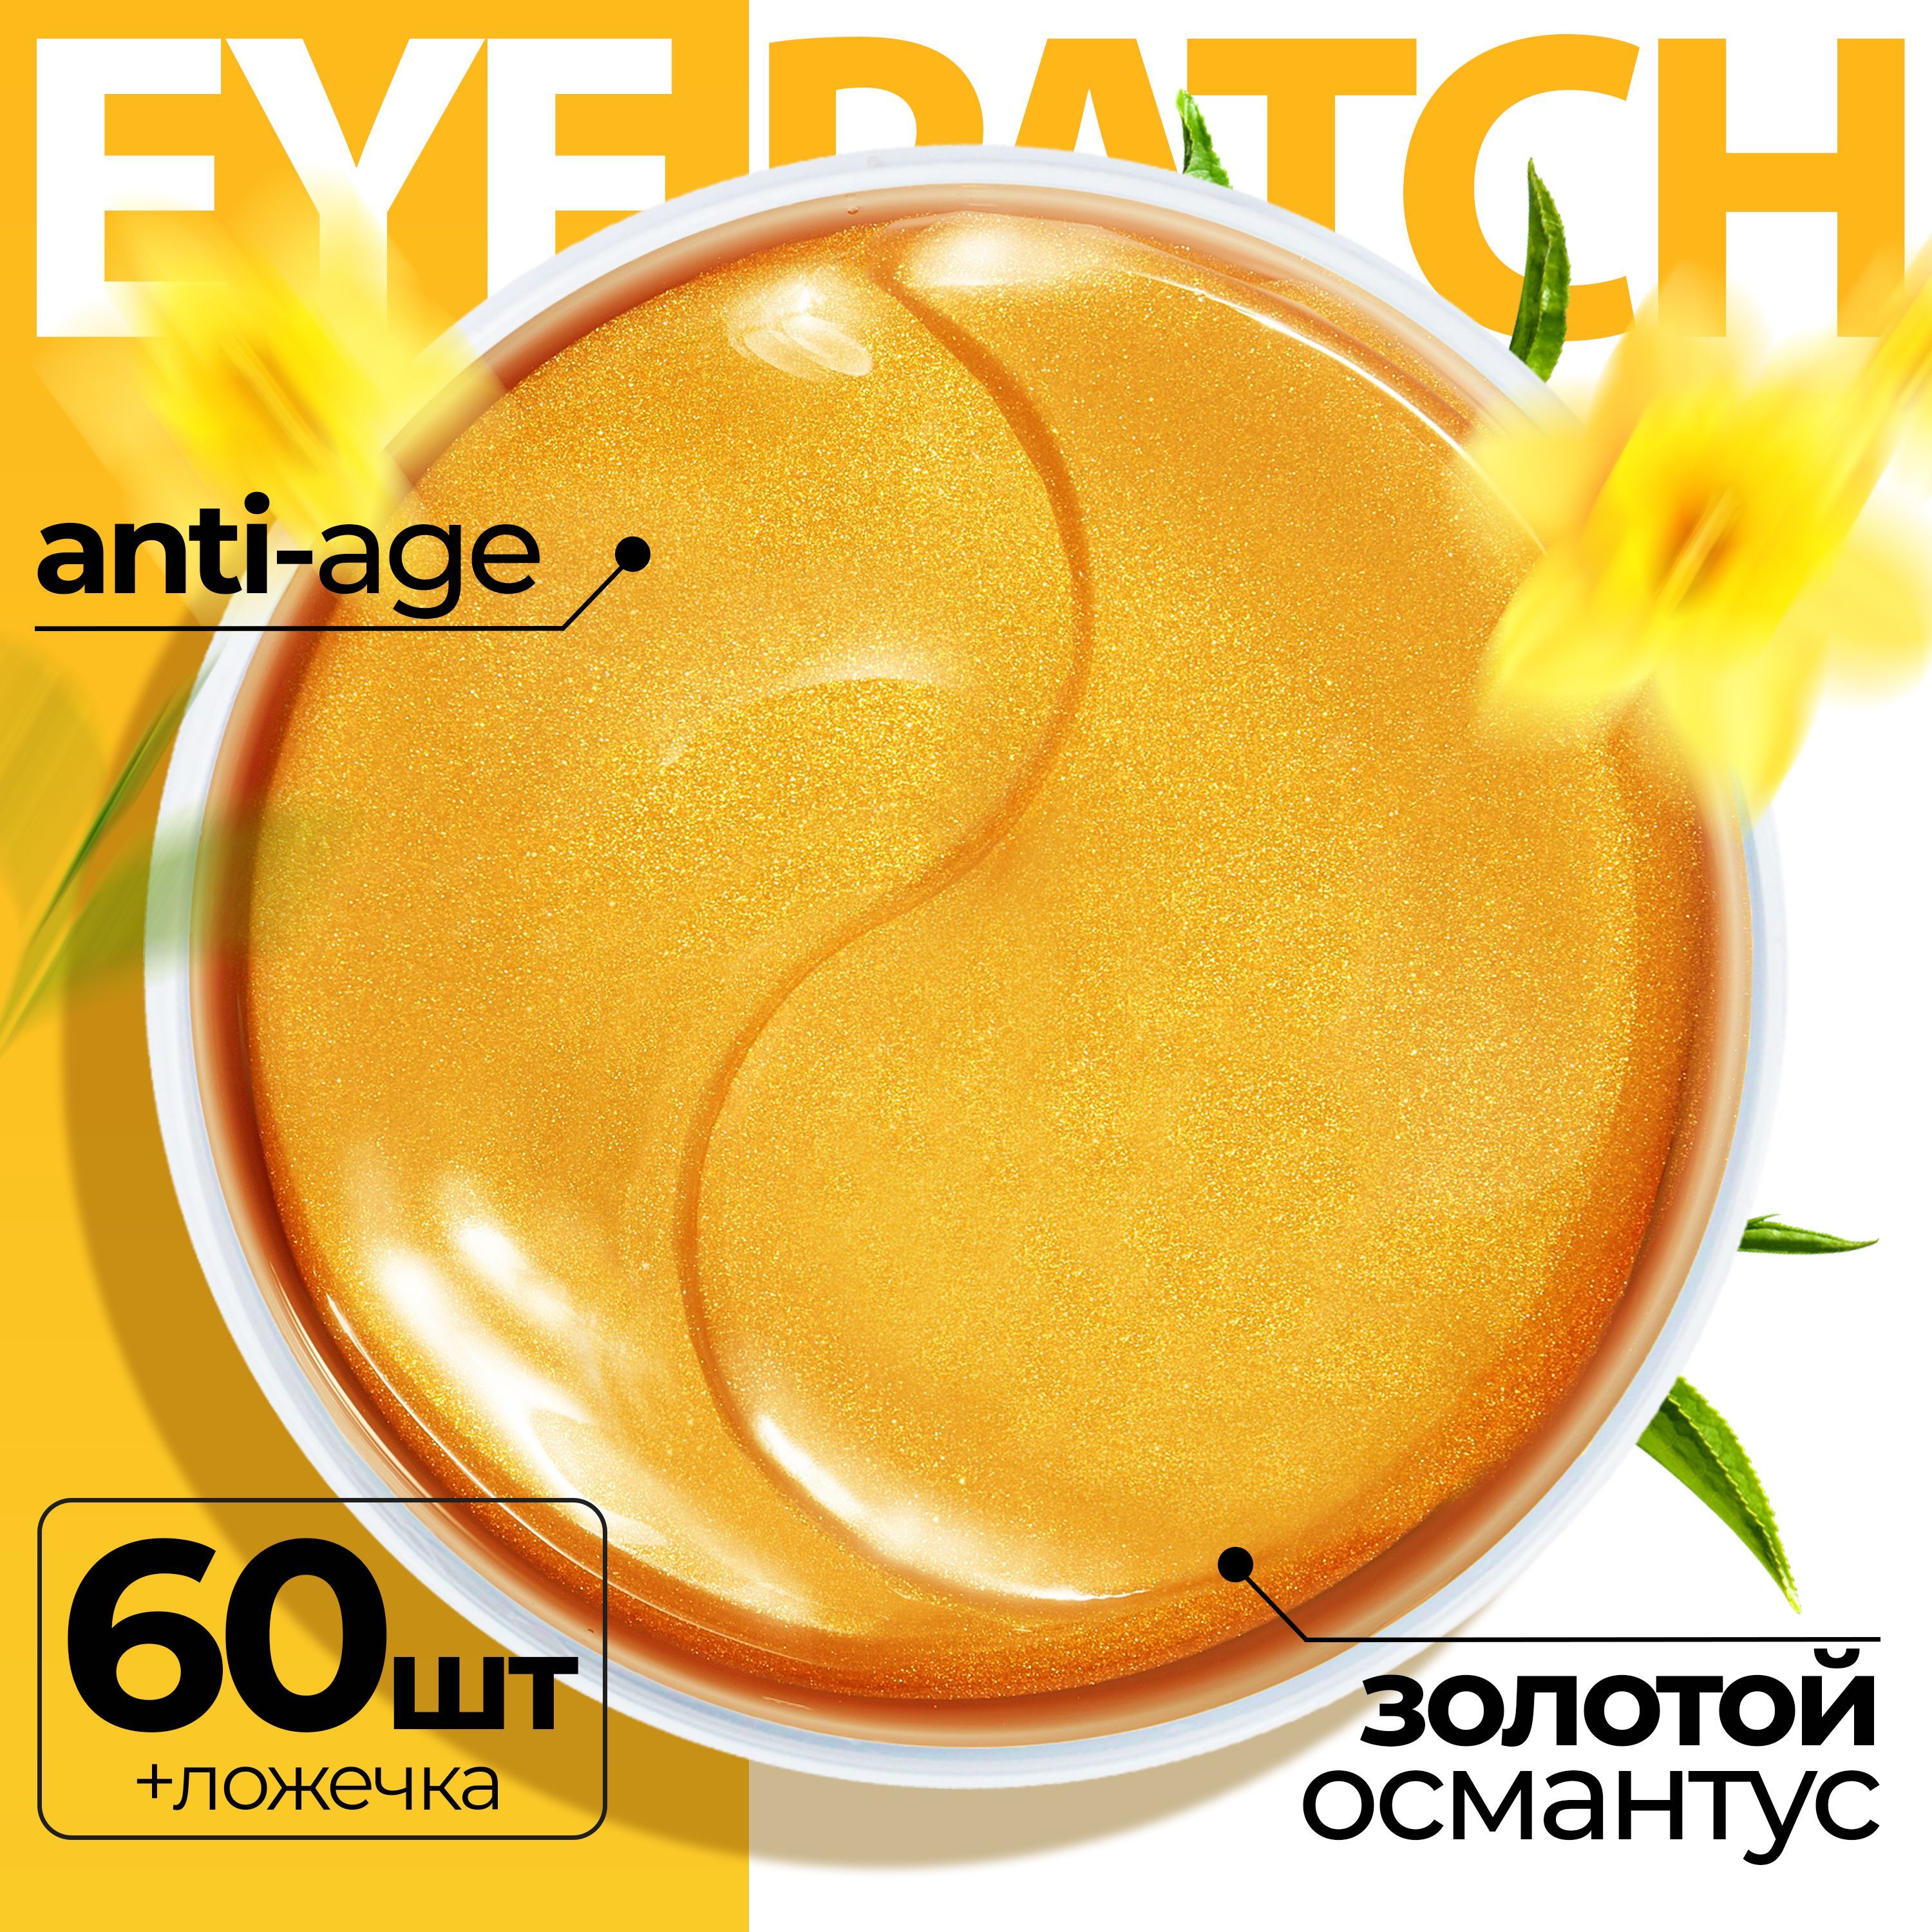 Патчи Fabrik cosmetology для кожи вокруг глаз гидрогелевые с золотым османтусом 60 шт